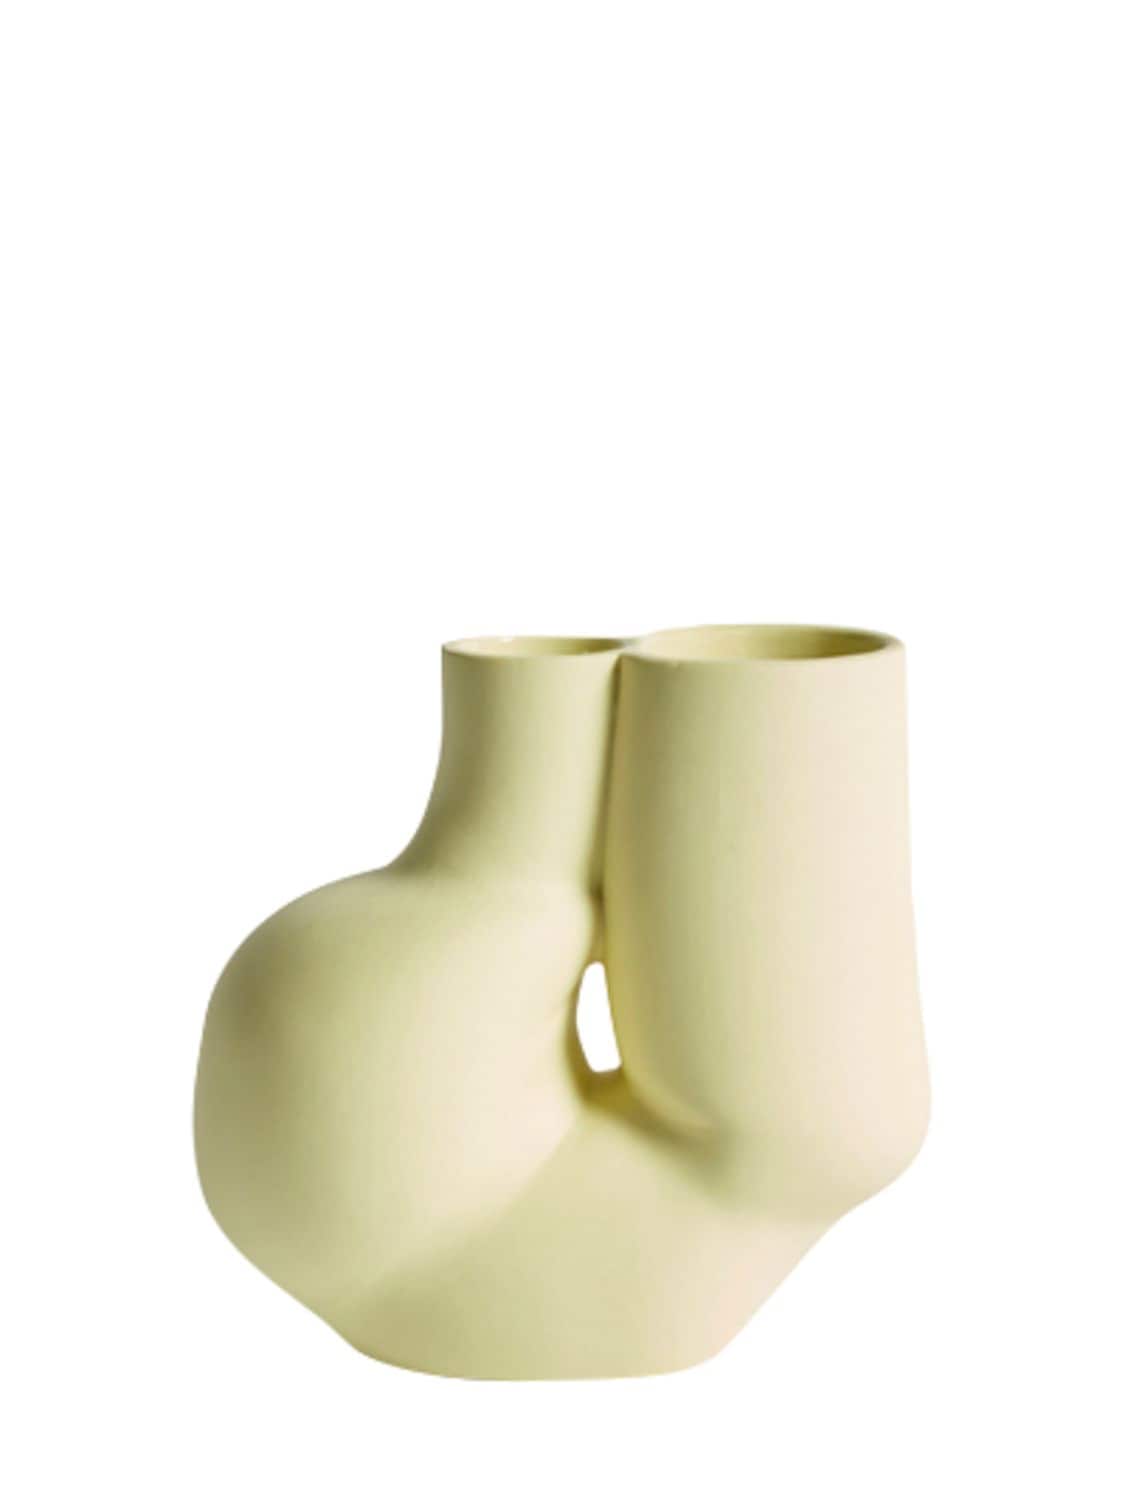 Image of W&s Vase